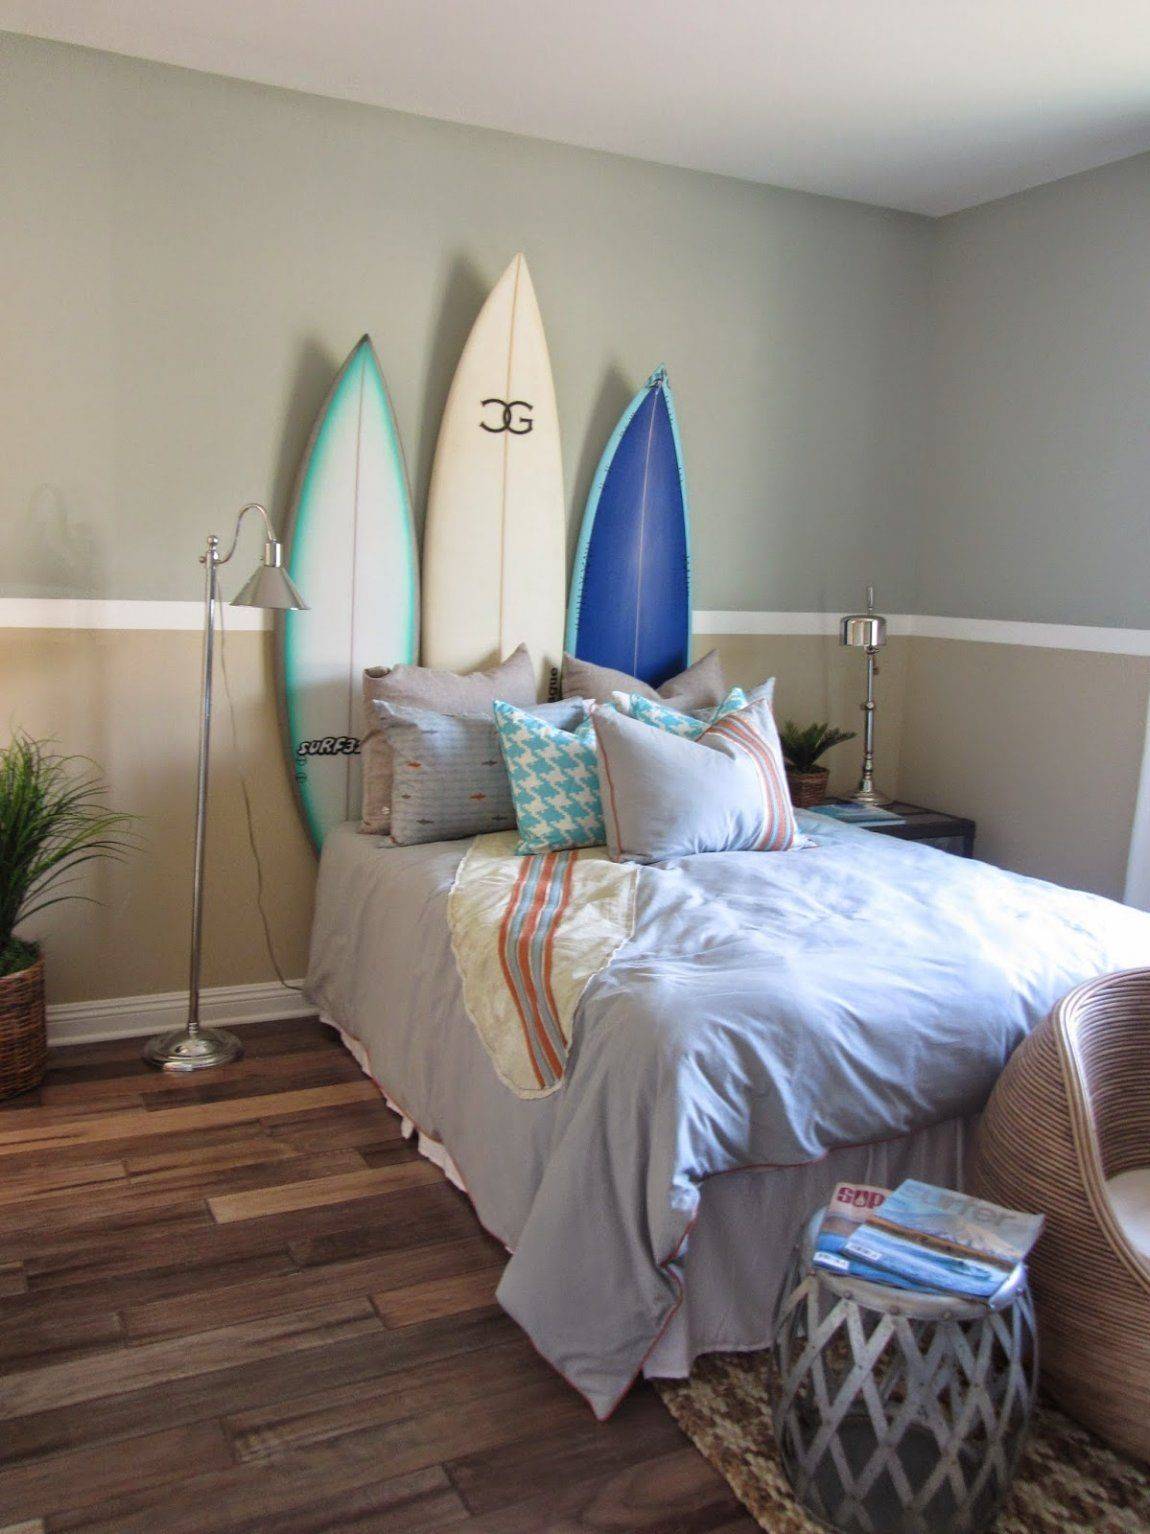 Ide kamar tidur terinspirasi pantai untuk rumah Anda